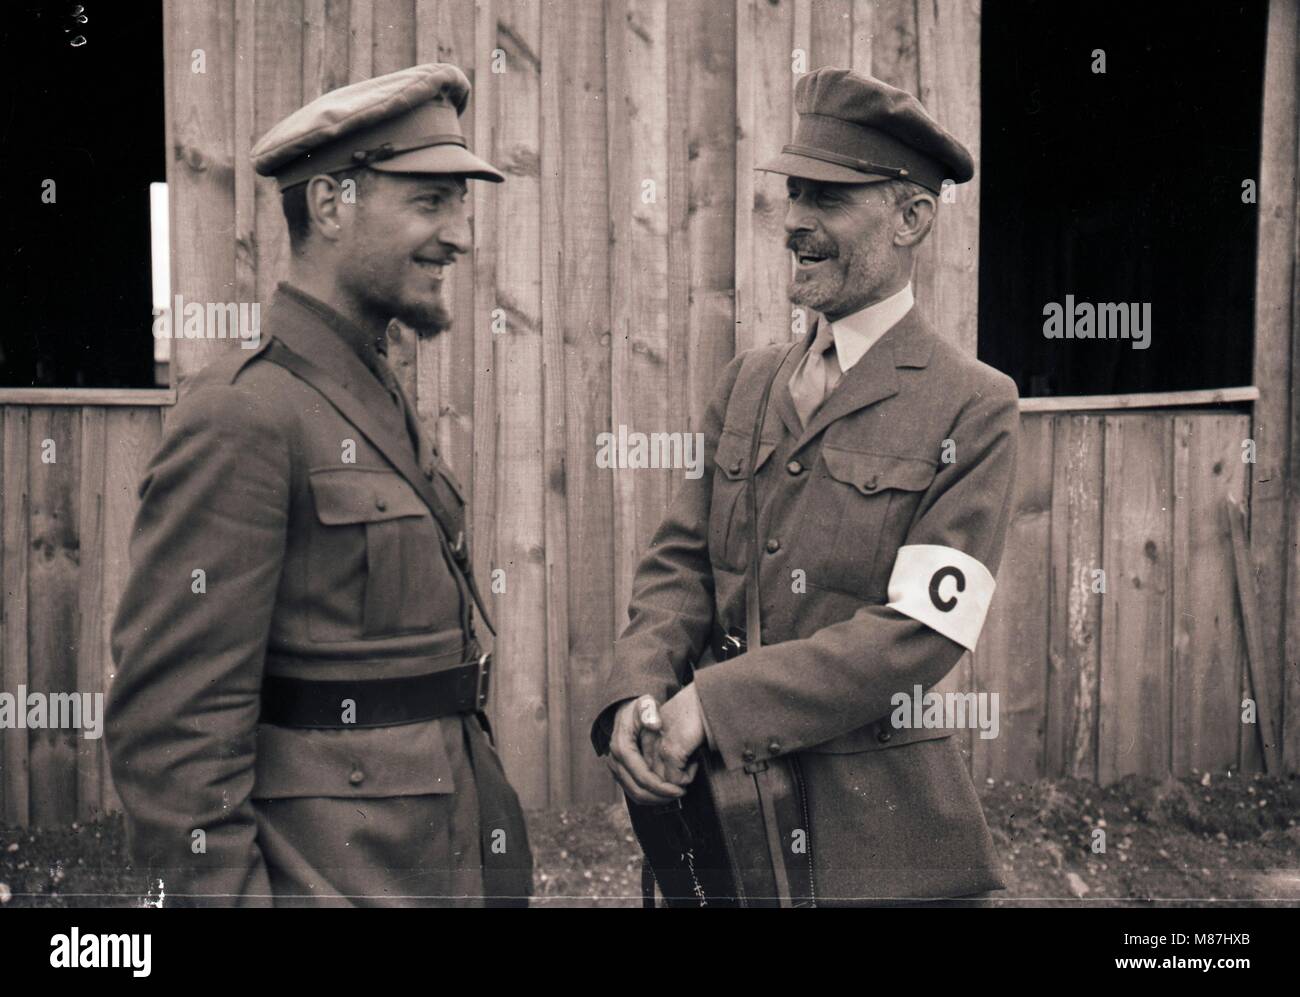 Burton Holmes Discuter avec l'agent de l'armée américaine, LA PREMIÈRE GUERRE MONDIALE, France, 1918 Banque D'Images